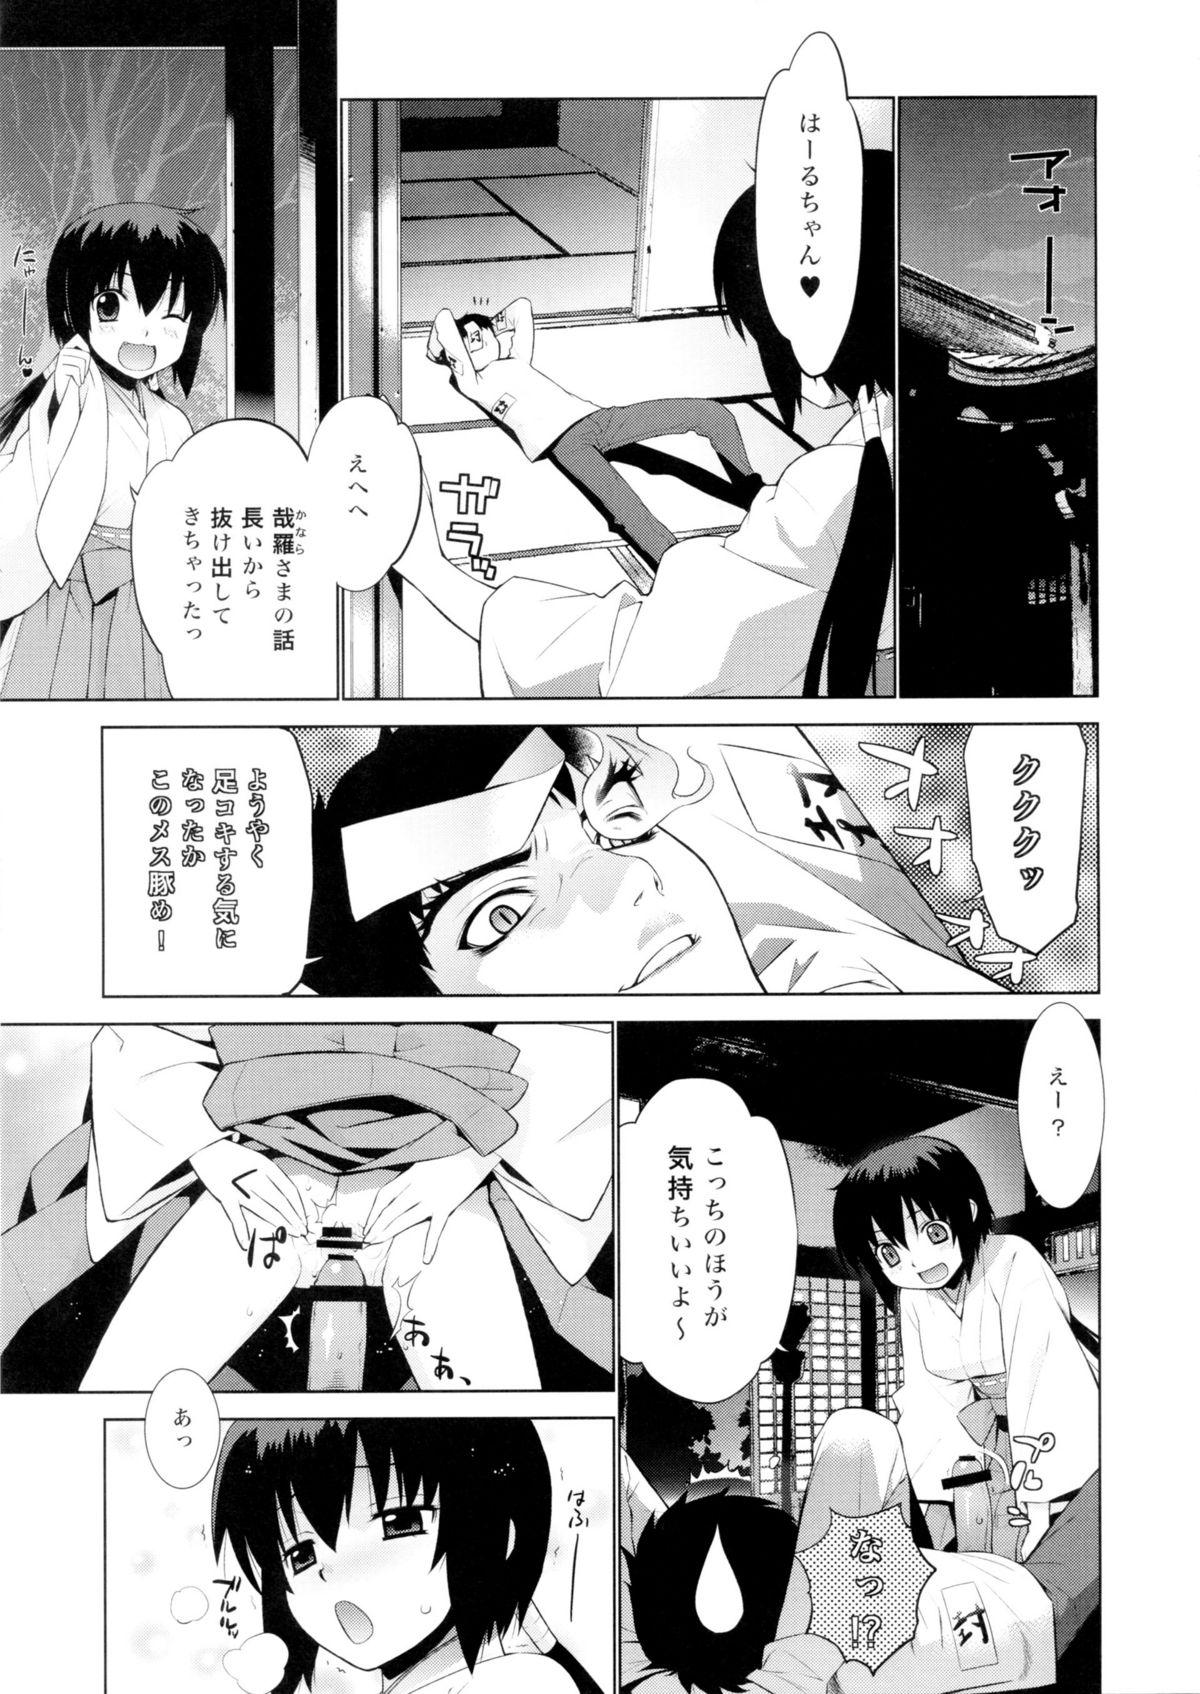 Action Kanara-sama no Nichijou Go - Tonari no miko san wa minna warau 3some - Page 7